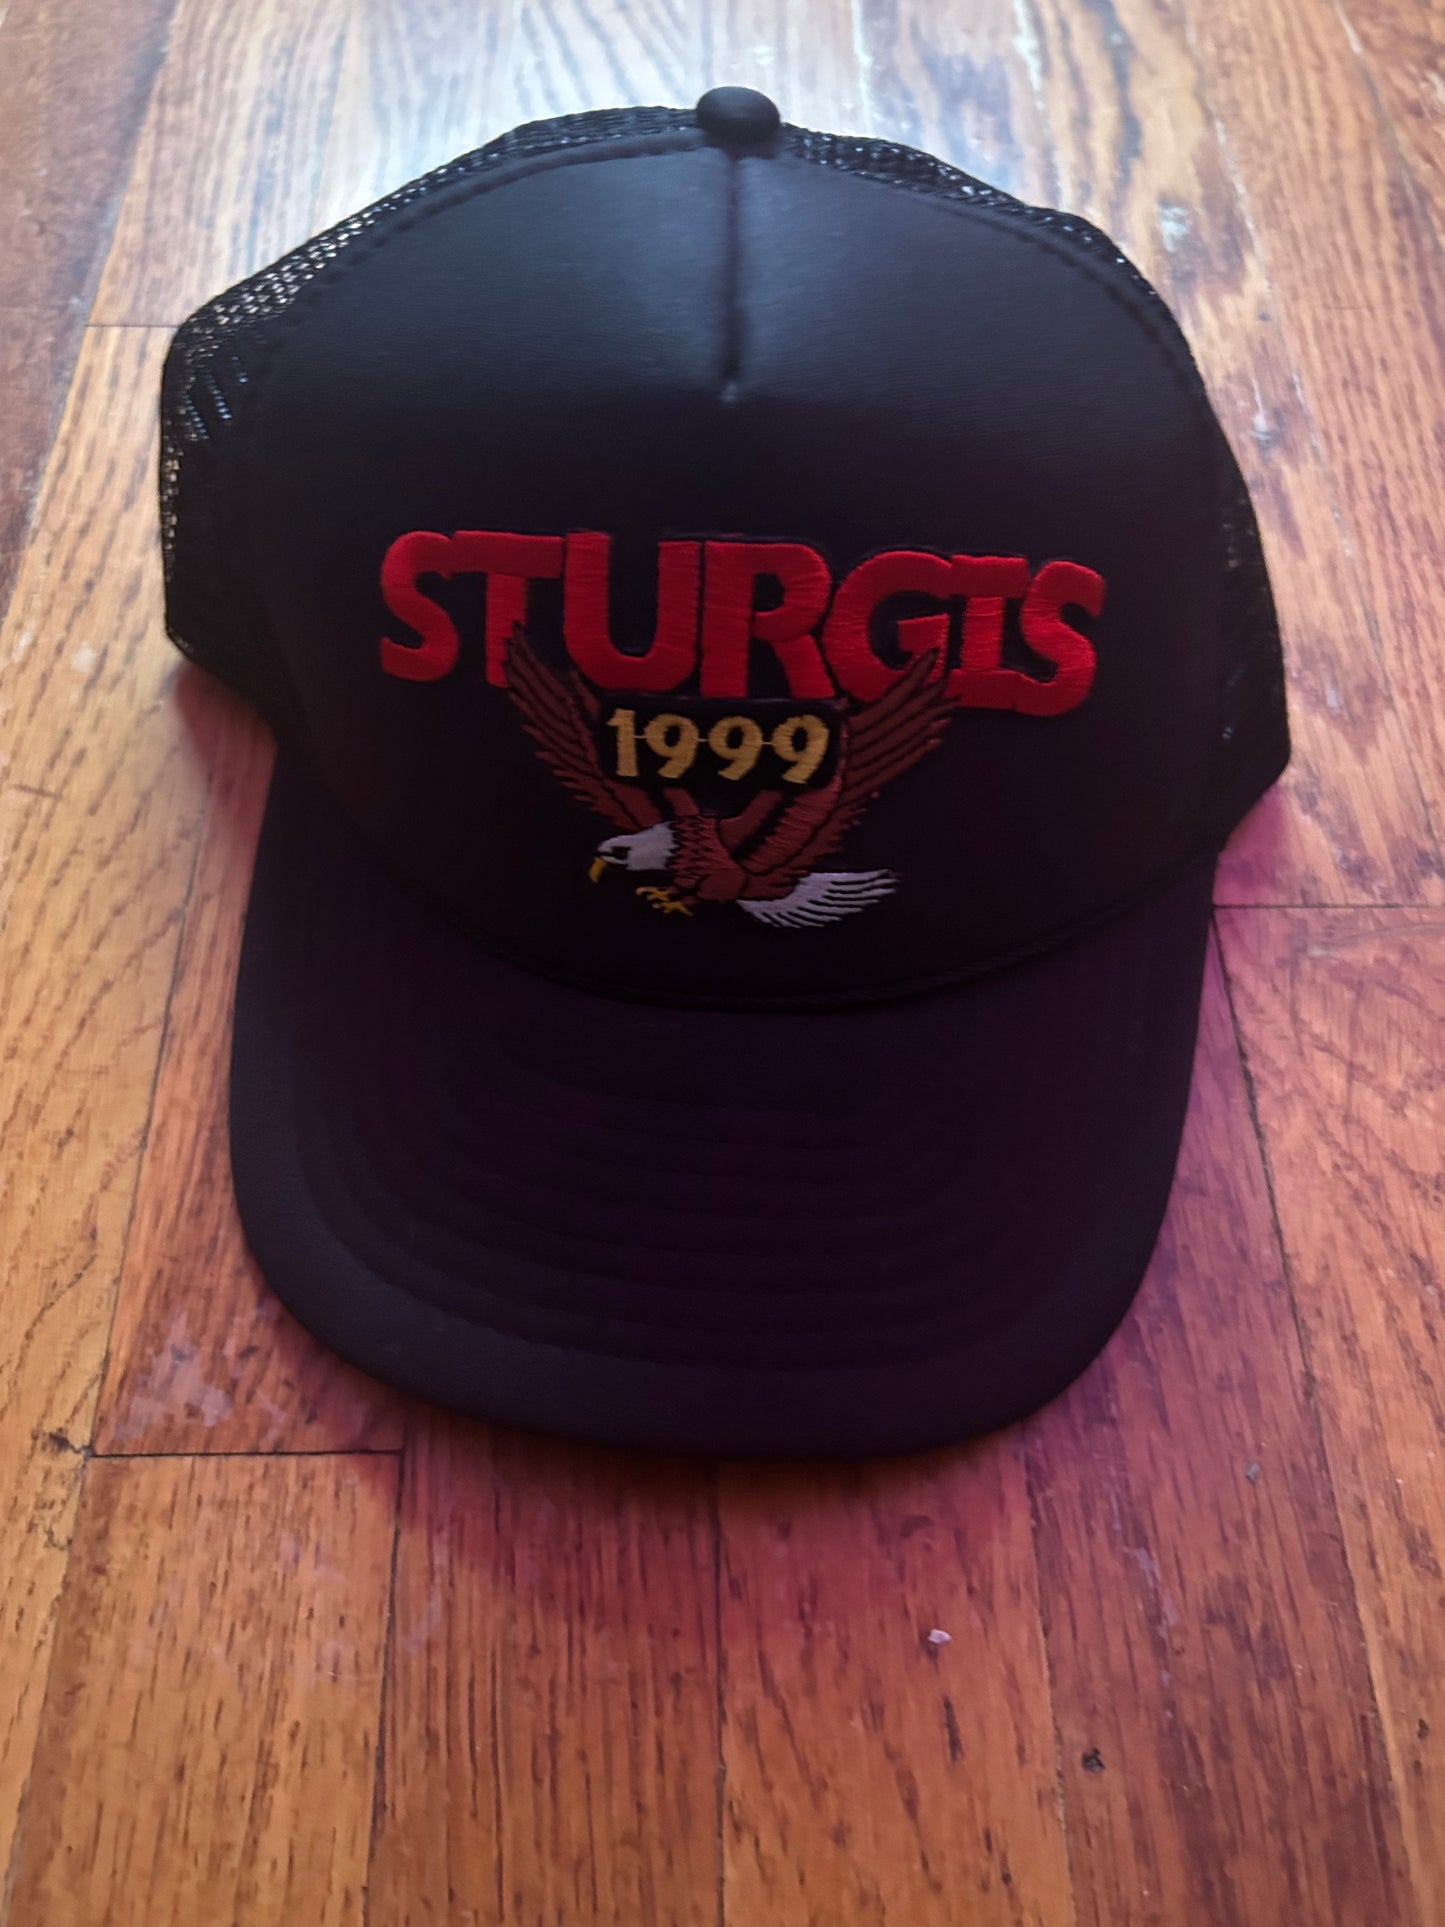 1999 Sturgis SnapBack